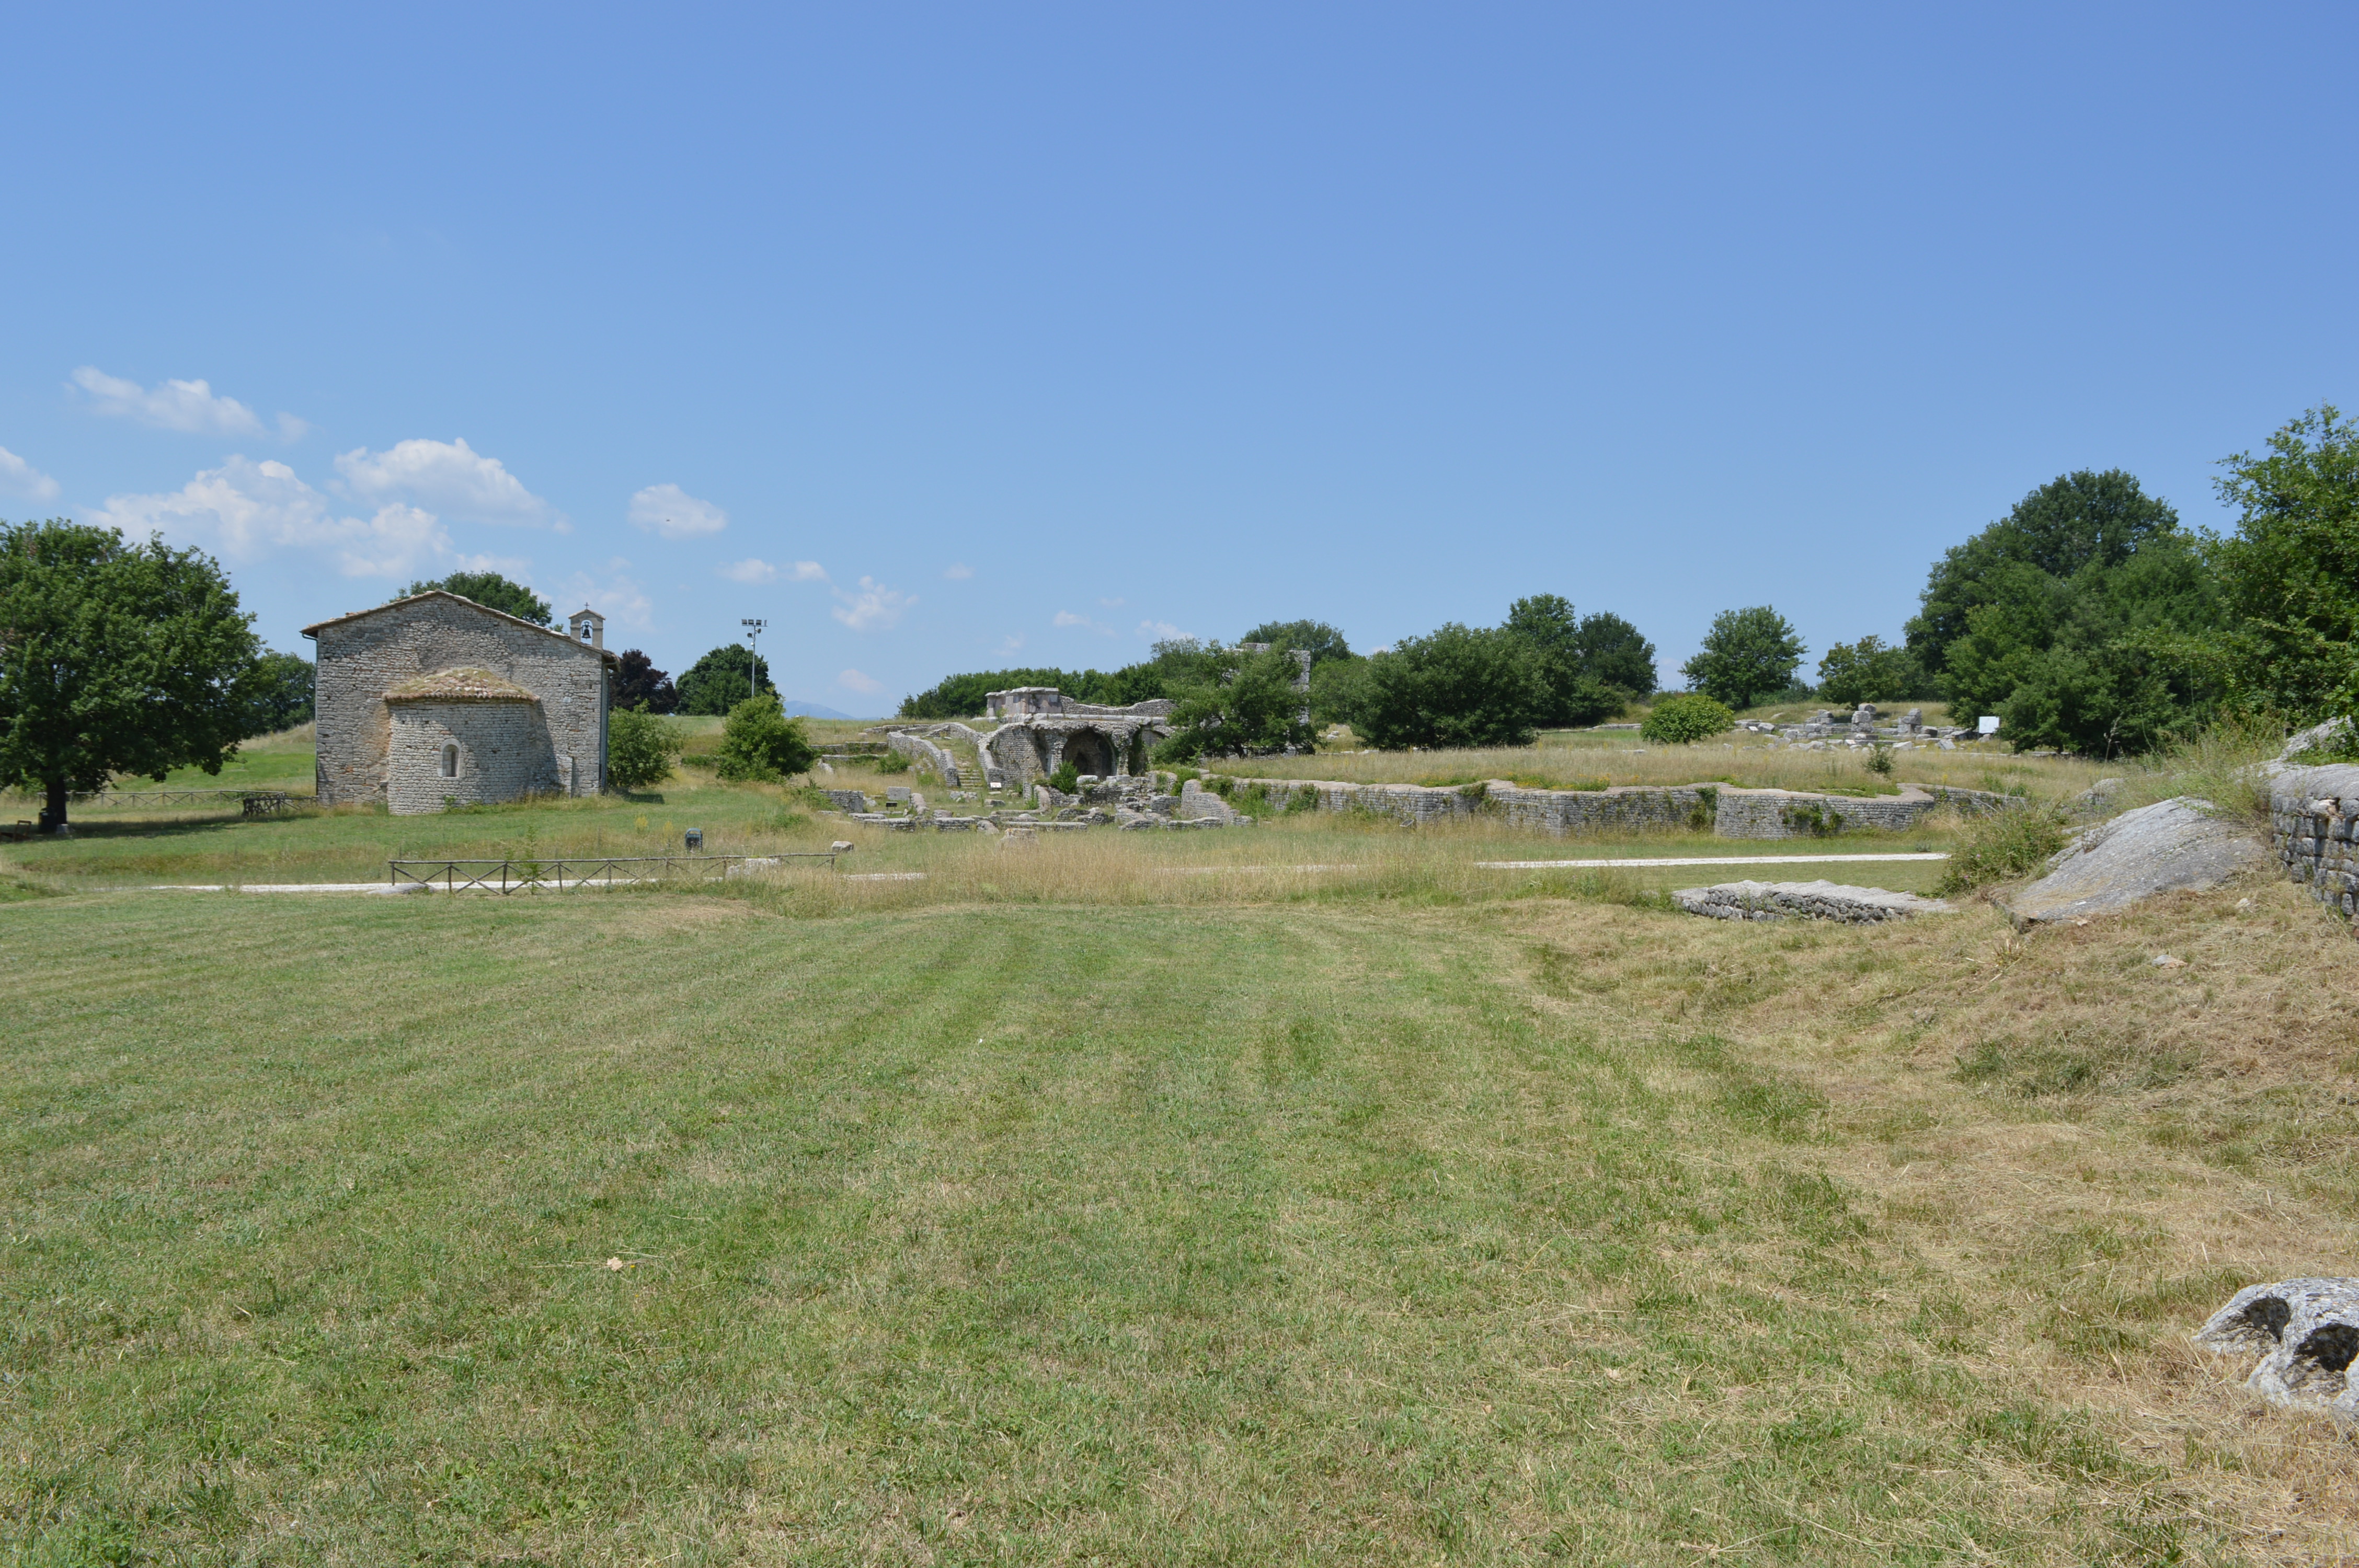 Carsulae Roman Ruins